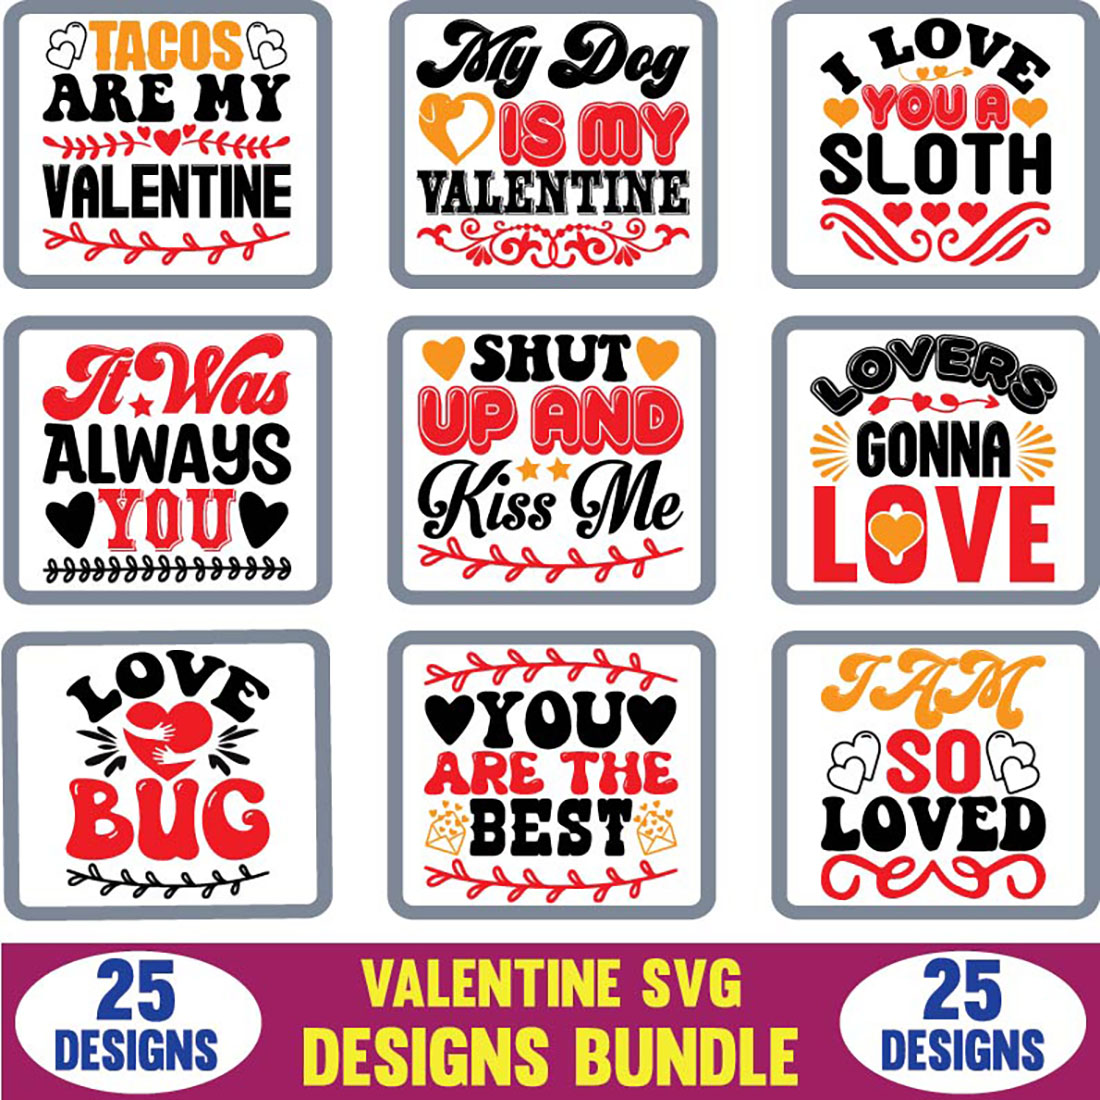 Valentine SVG Designs Bundle T-shirt image cover.